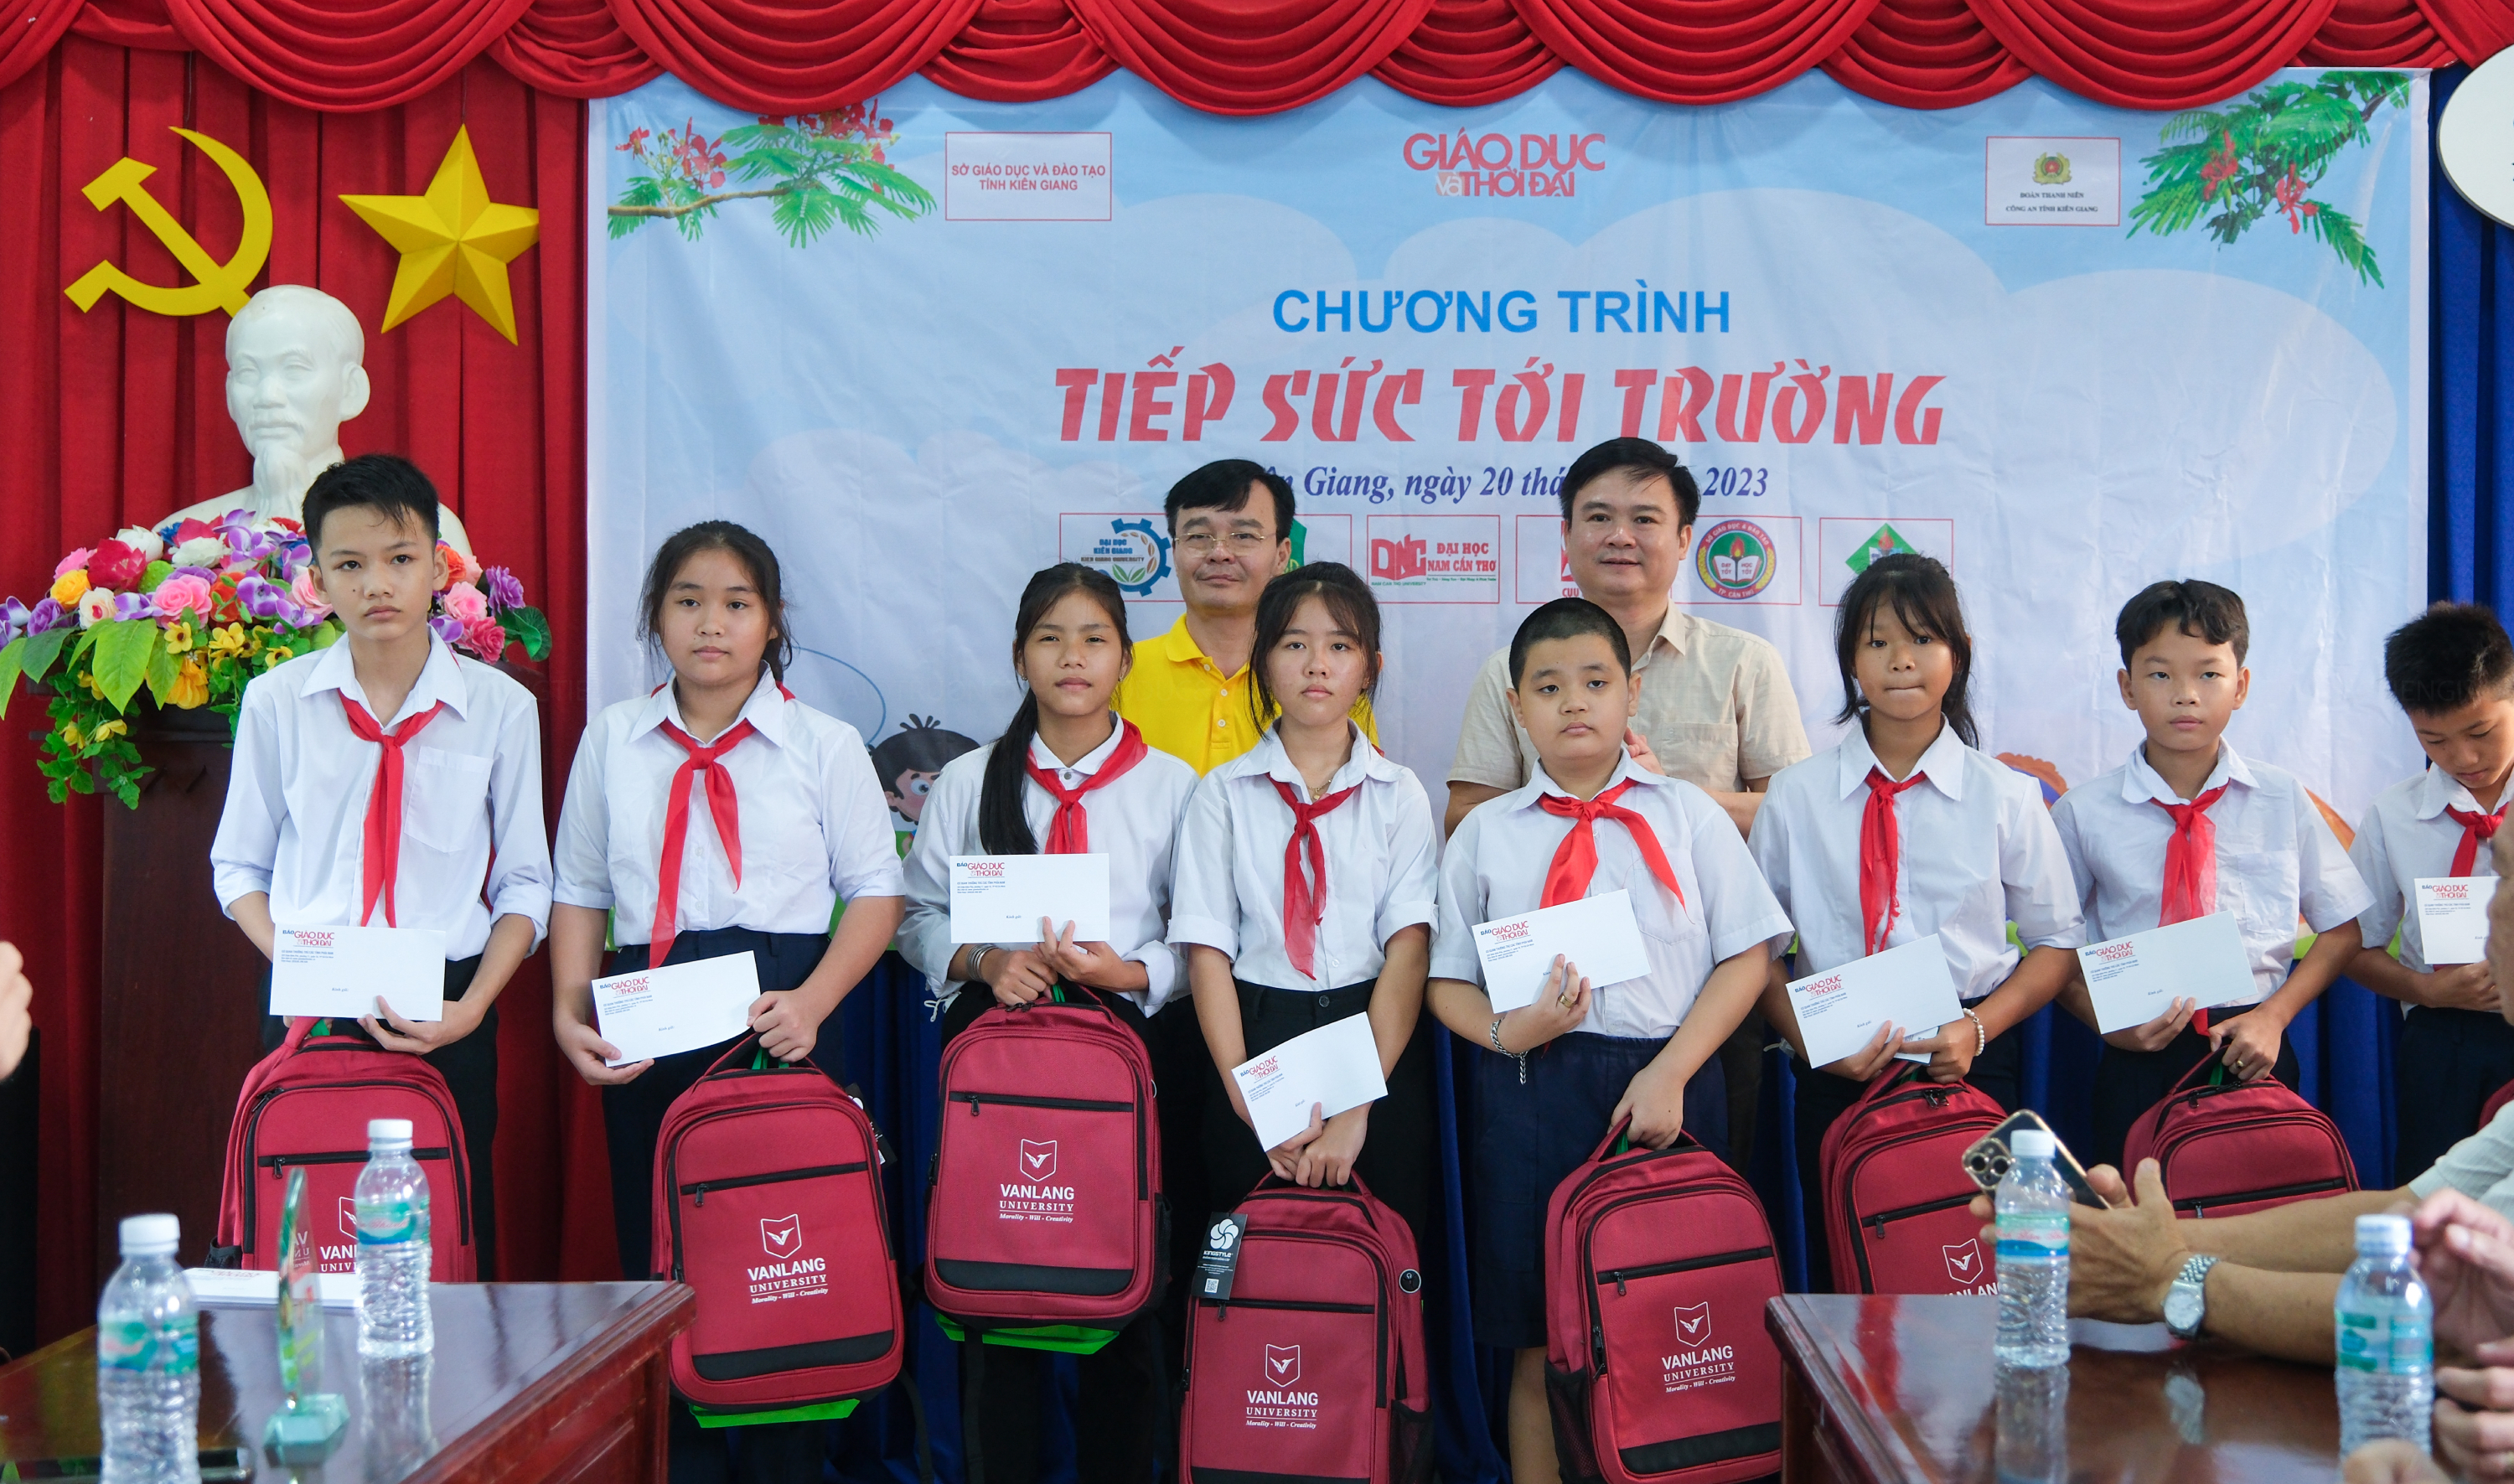 Chương trình 'Tiếp sức đến trường' đến với học sinh Kiên Giang ảnh 10